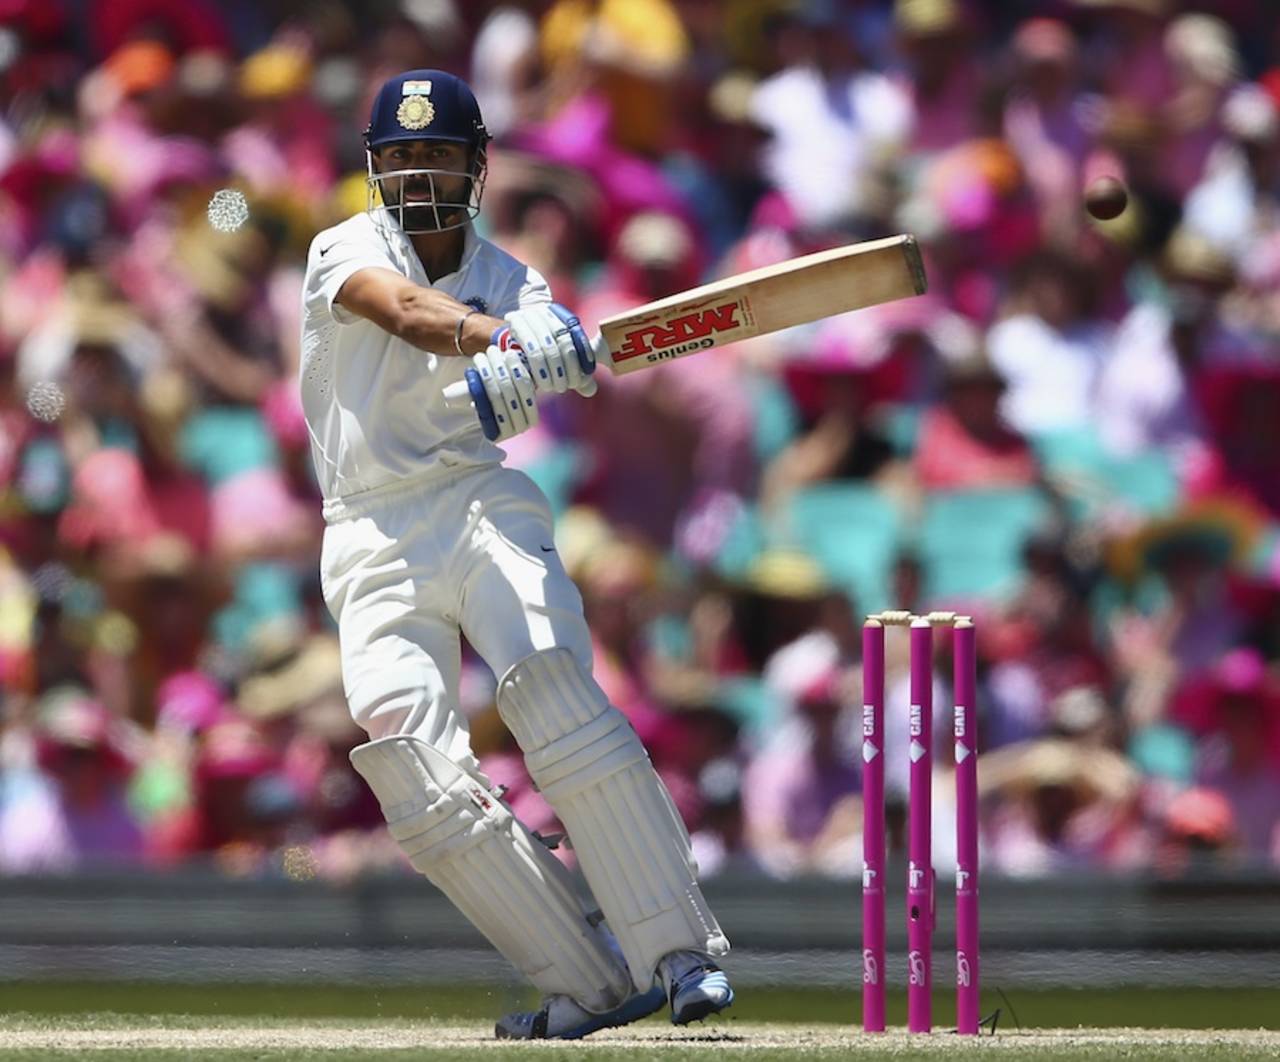 Virat Kohli pulls, Australia v India, 4th Test, Sydney, 3rd day, January 8, 2015